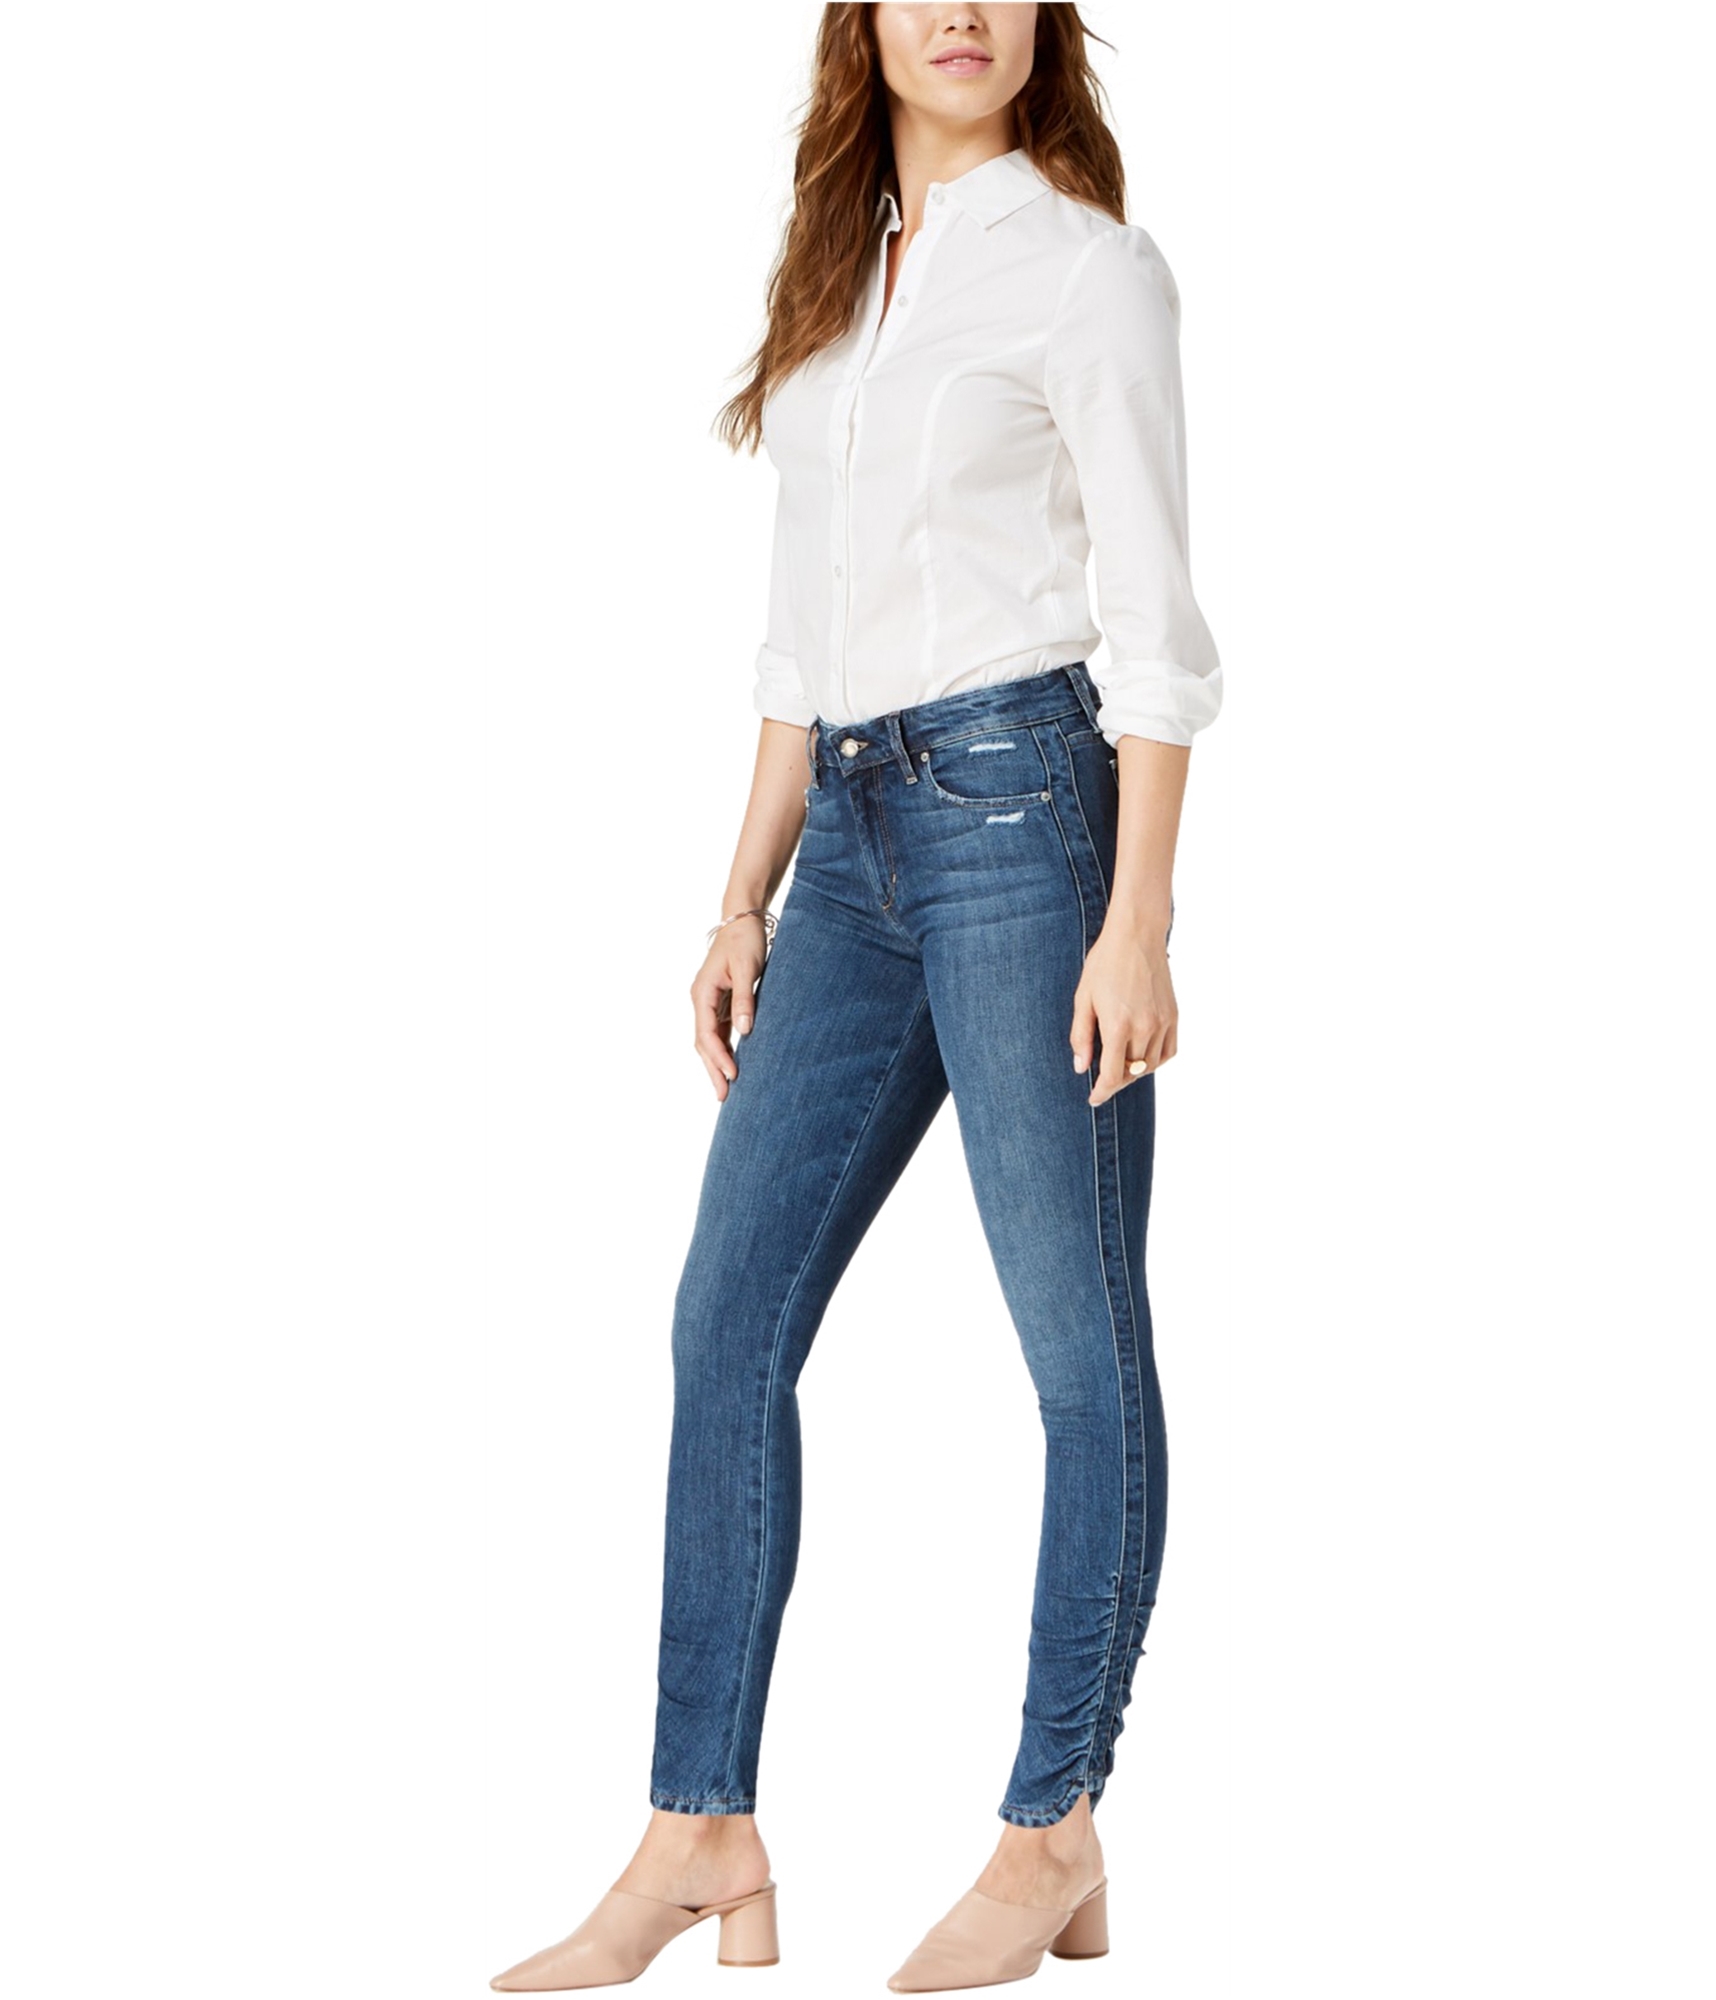 women wearing skinny jeans